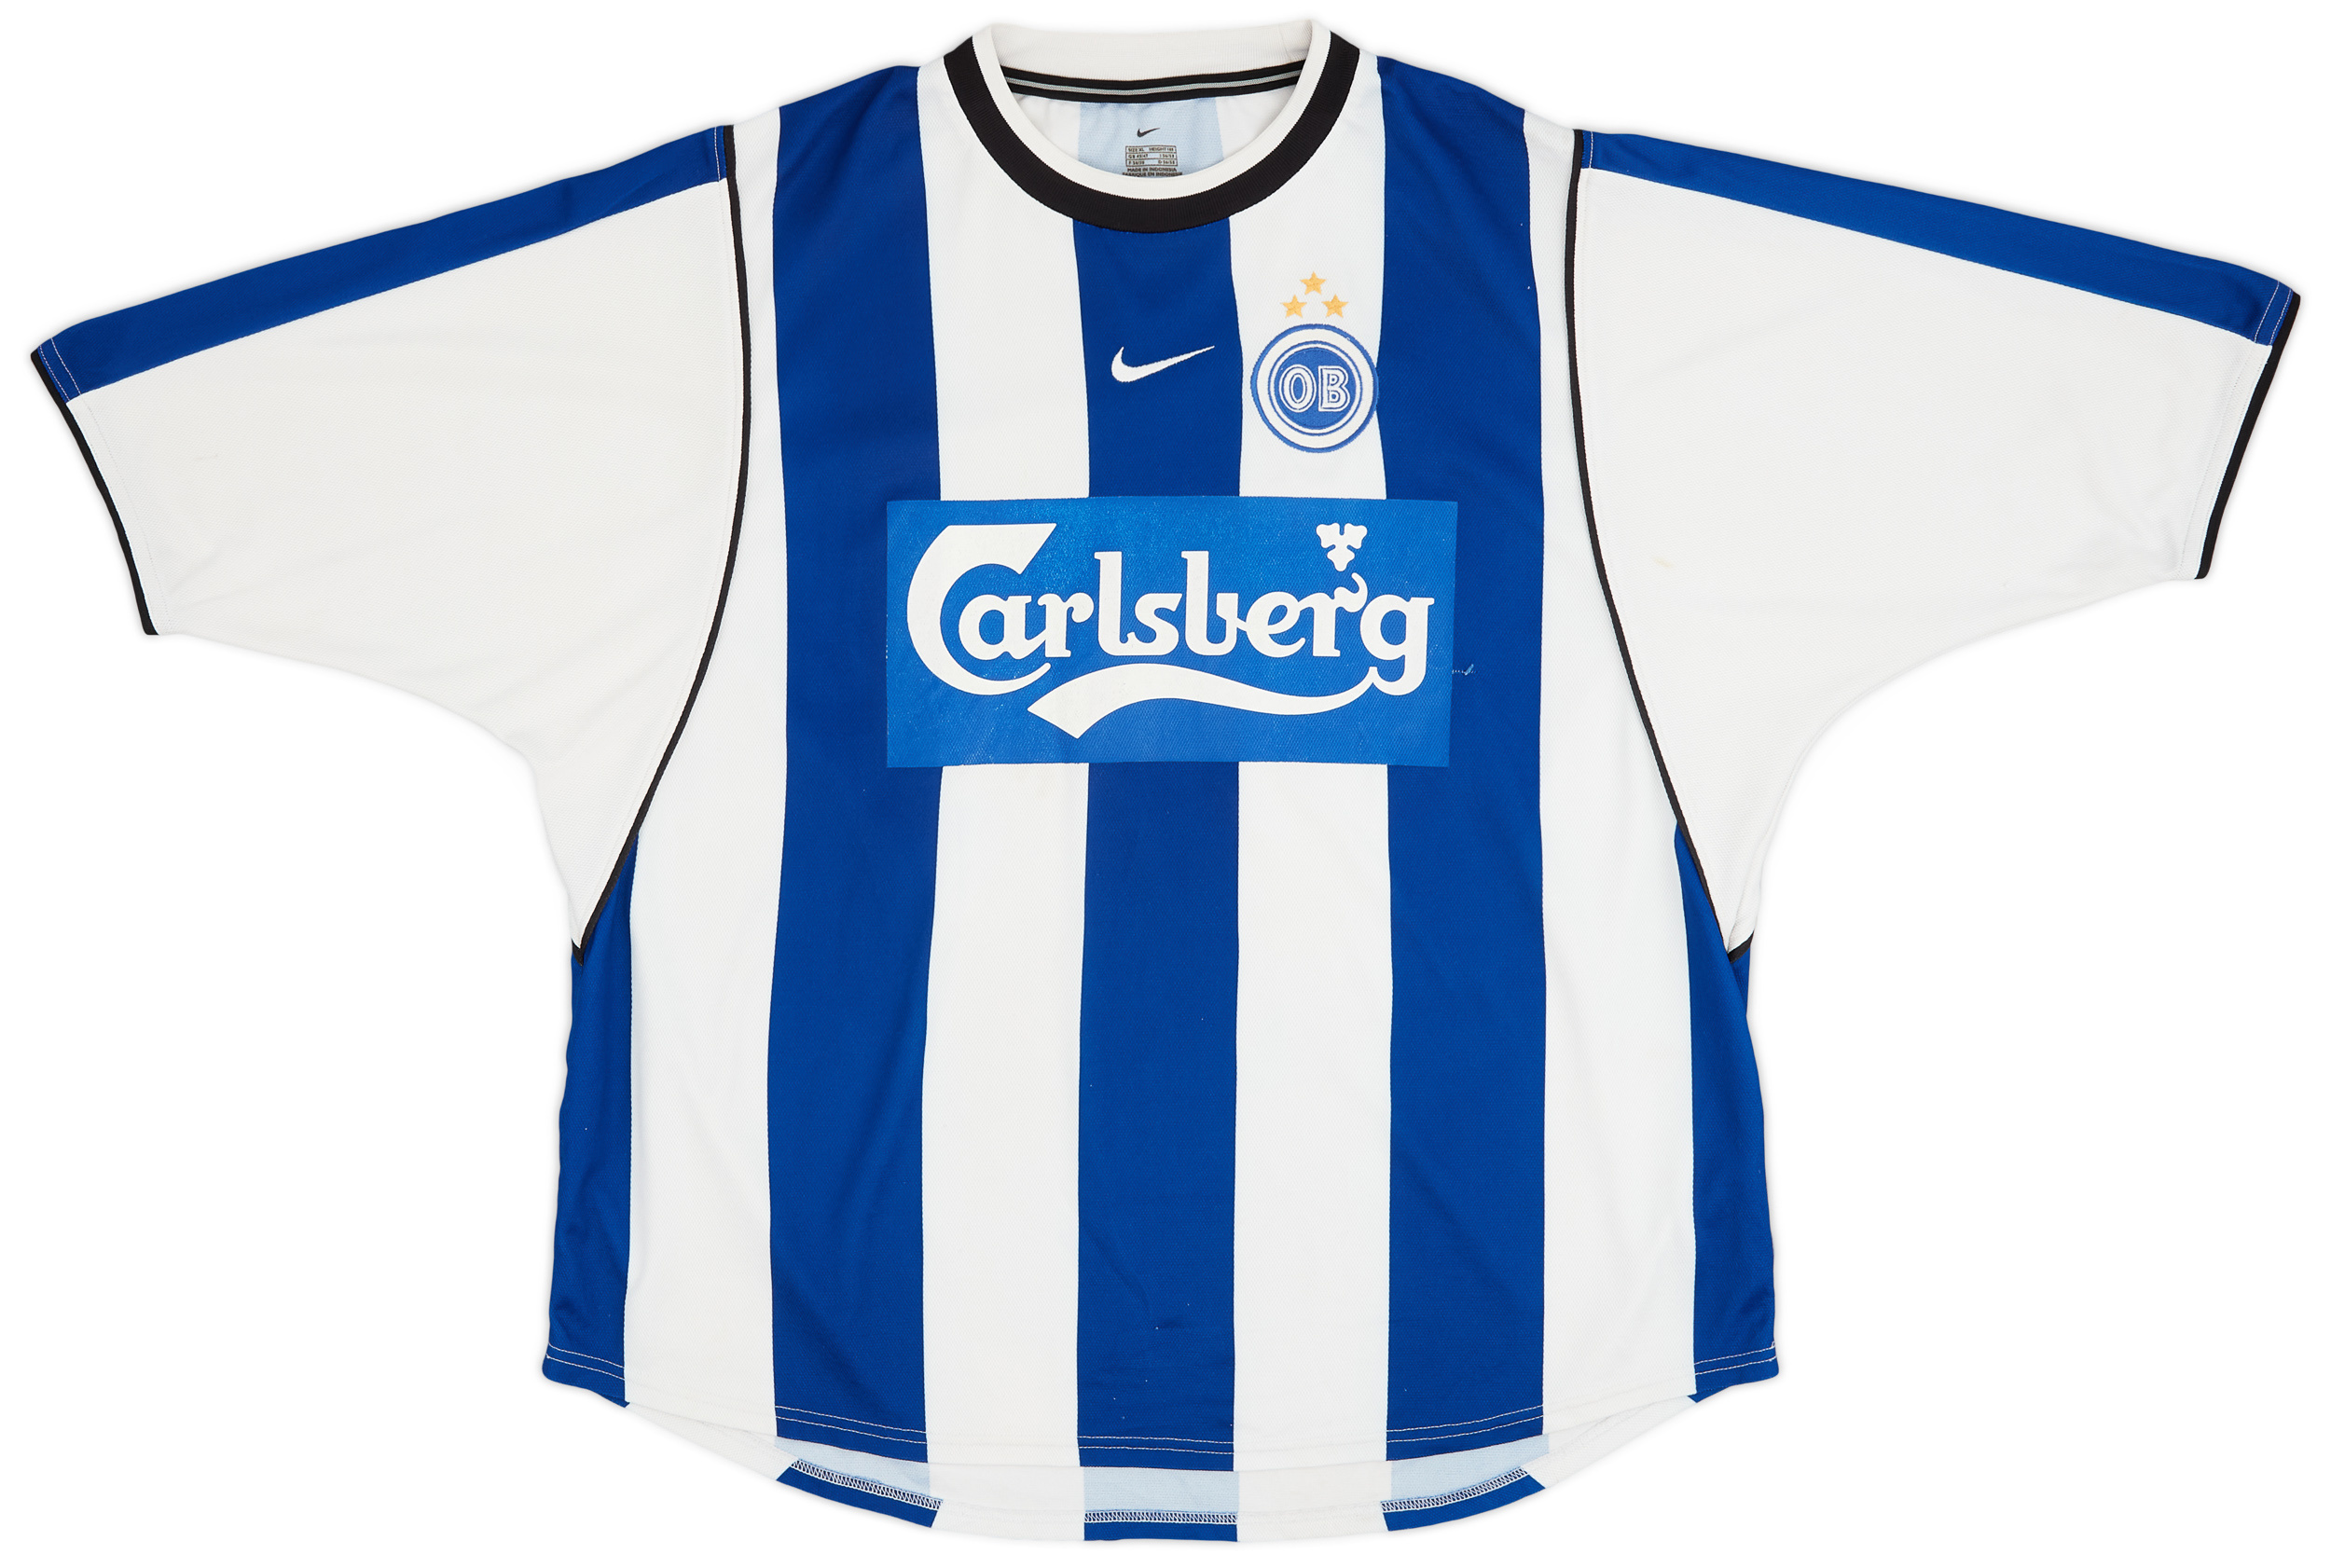 Odense BK  home shirt  (Original)